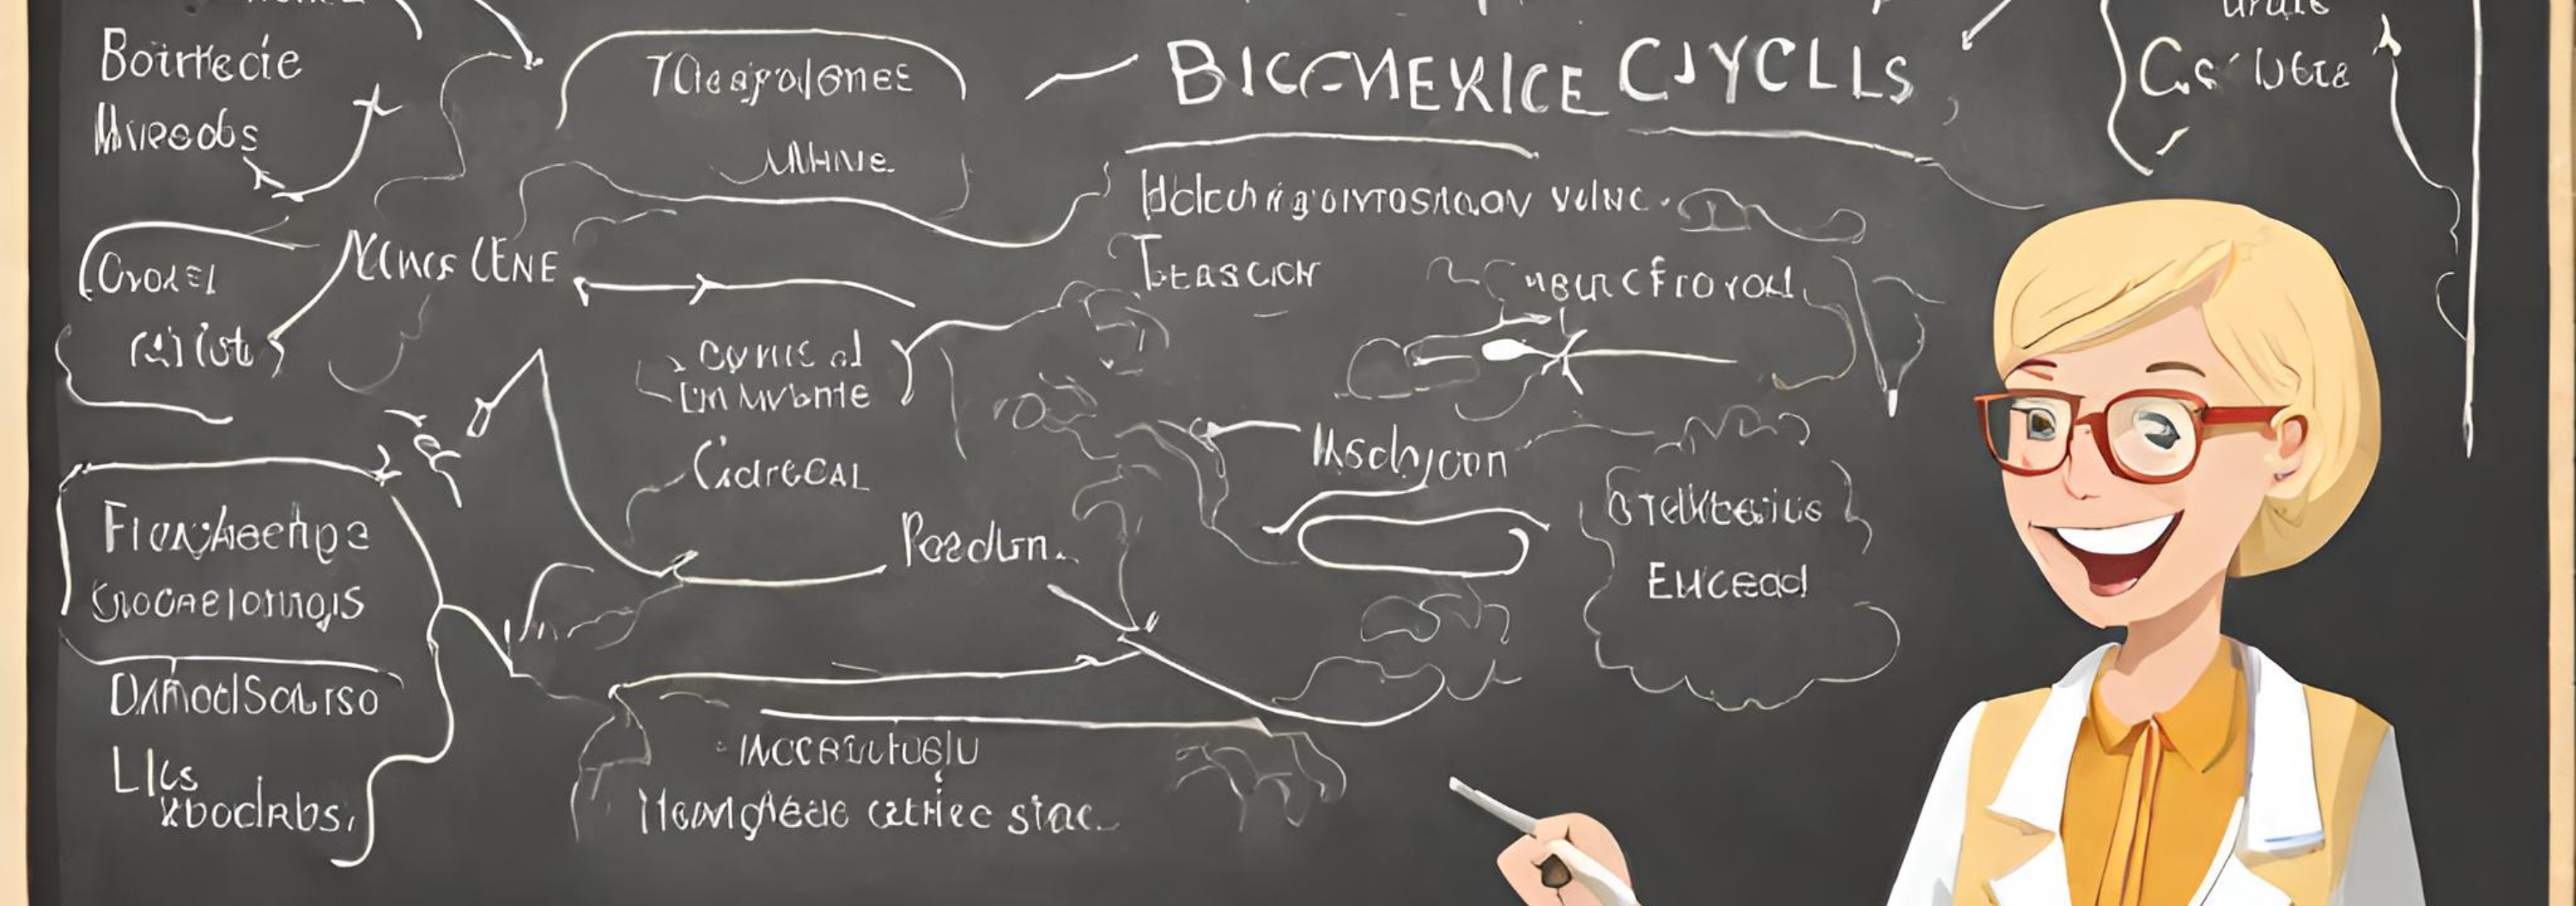 Ciclos-biogeoquimicos-ciclo-hidrologico